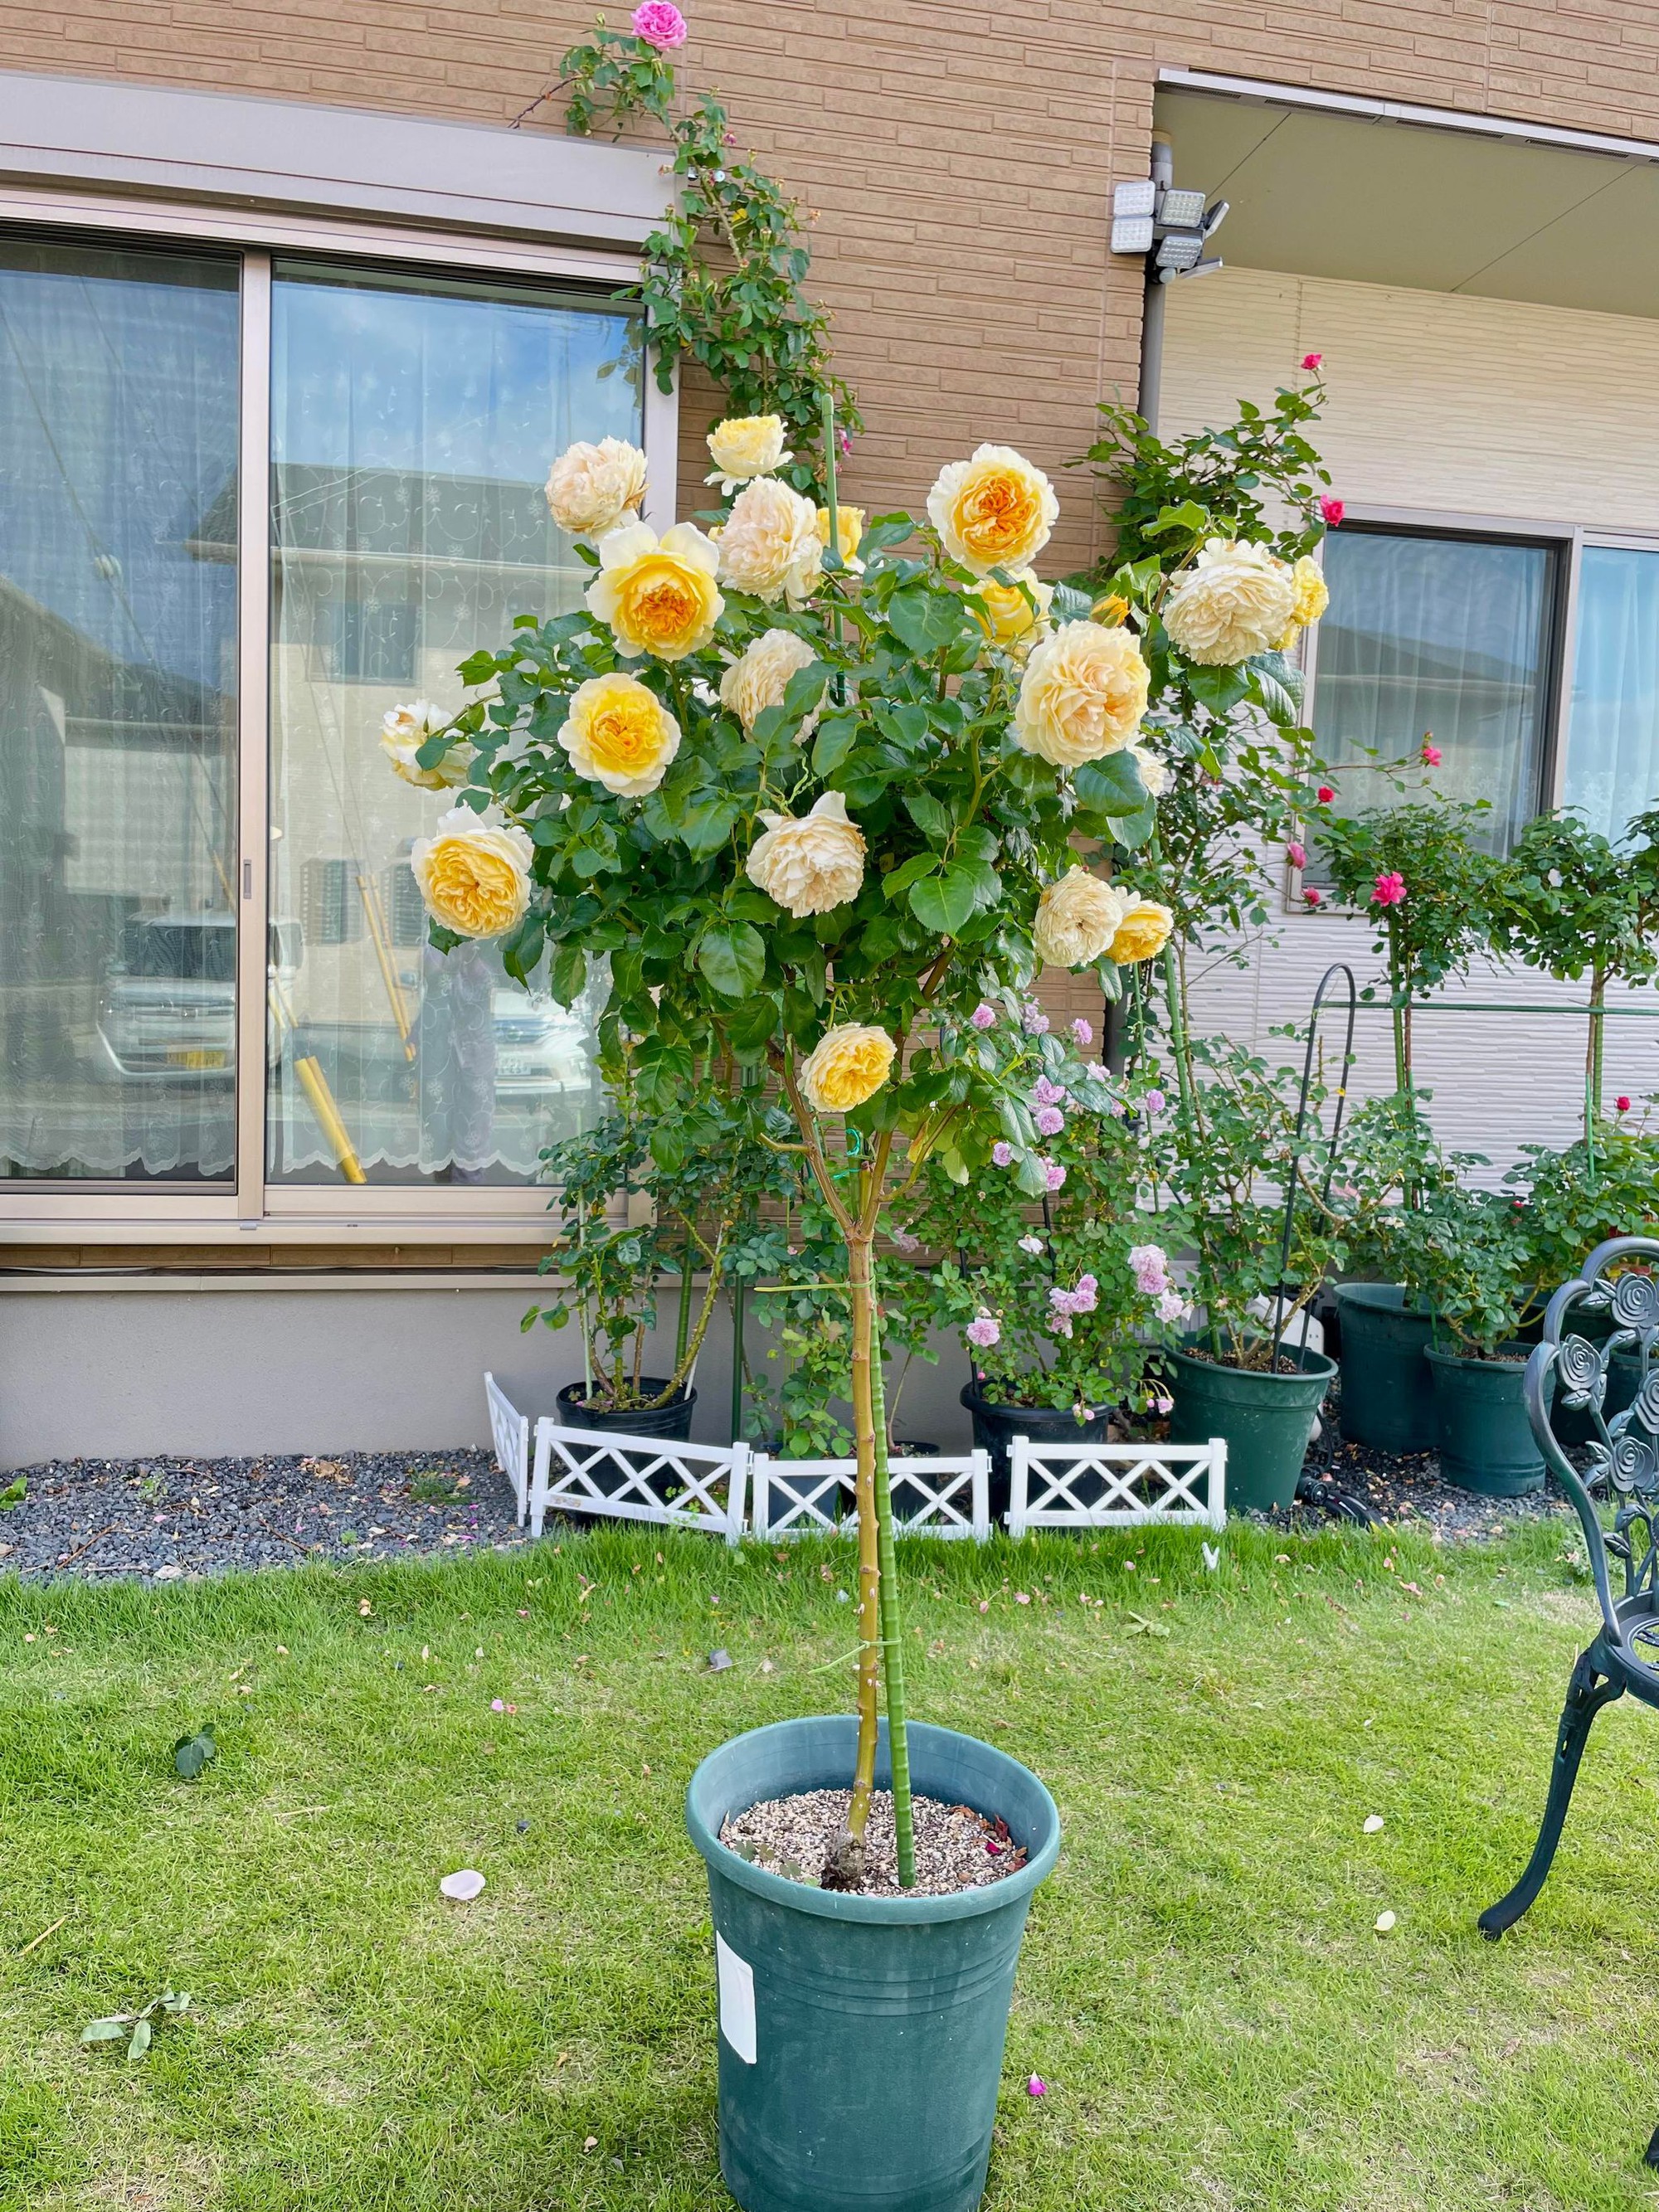 Ngôi nhà lúc nào cũng thơm nức mùi hoa vì có vườn hồng hơn 80 loại của mẹ Việt ở Nhật- Ảnh 15.